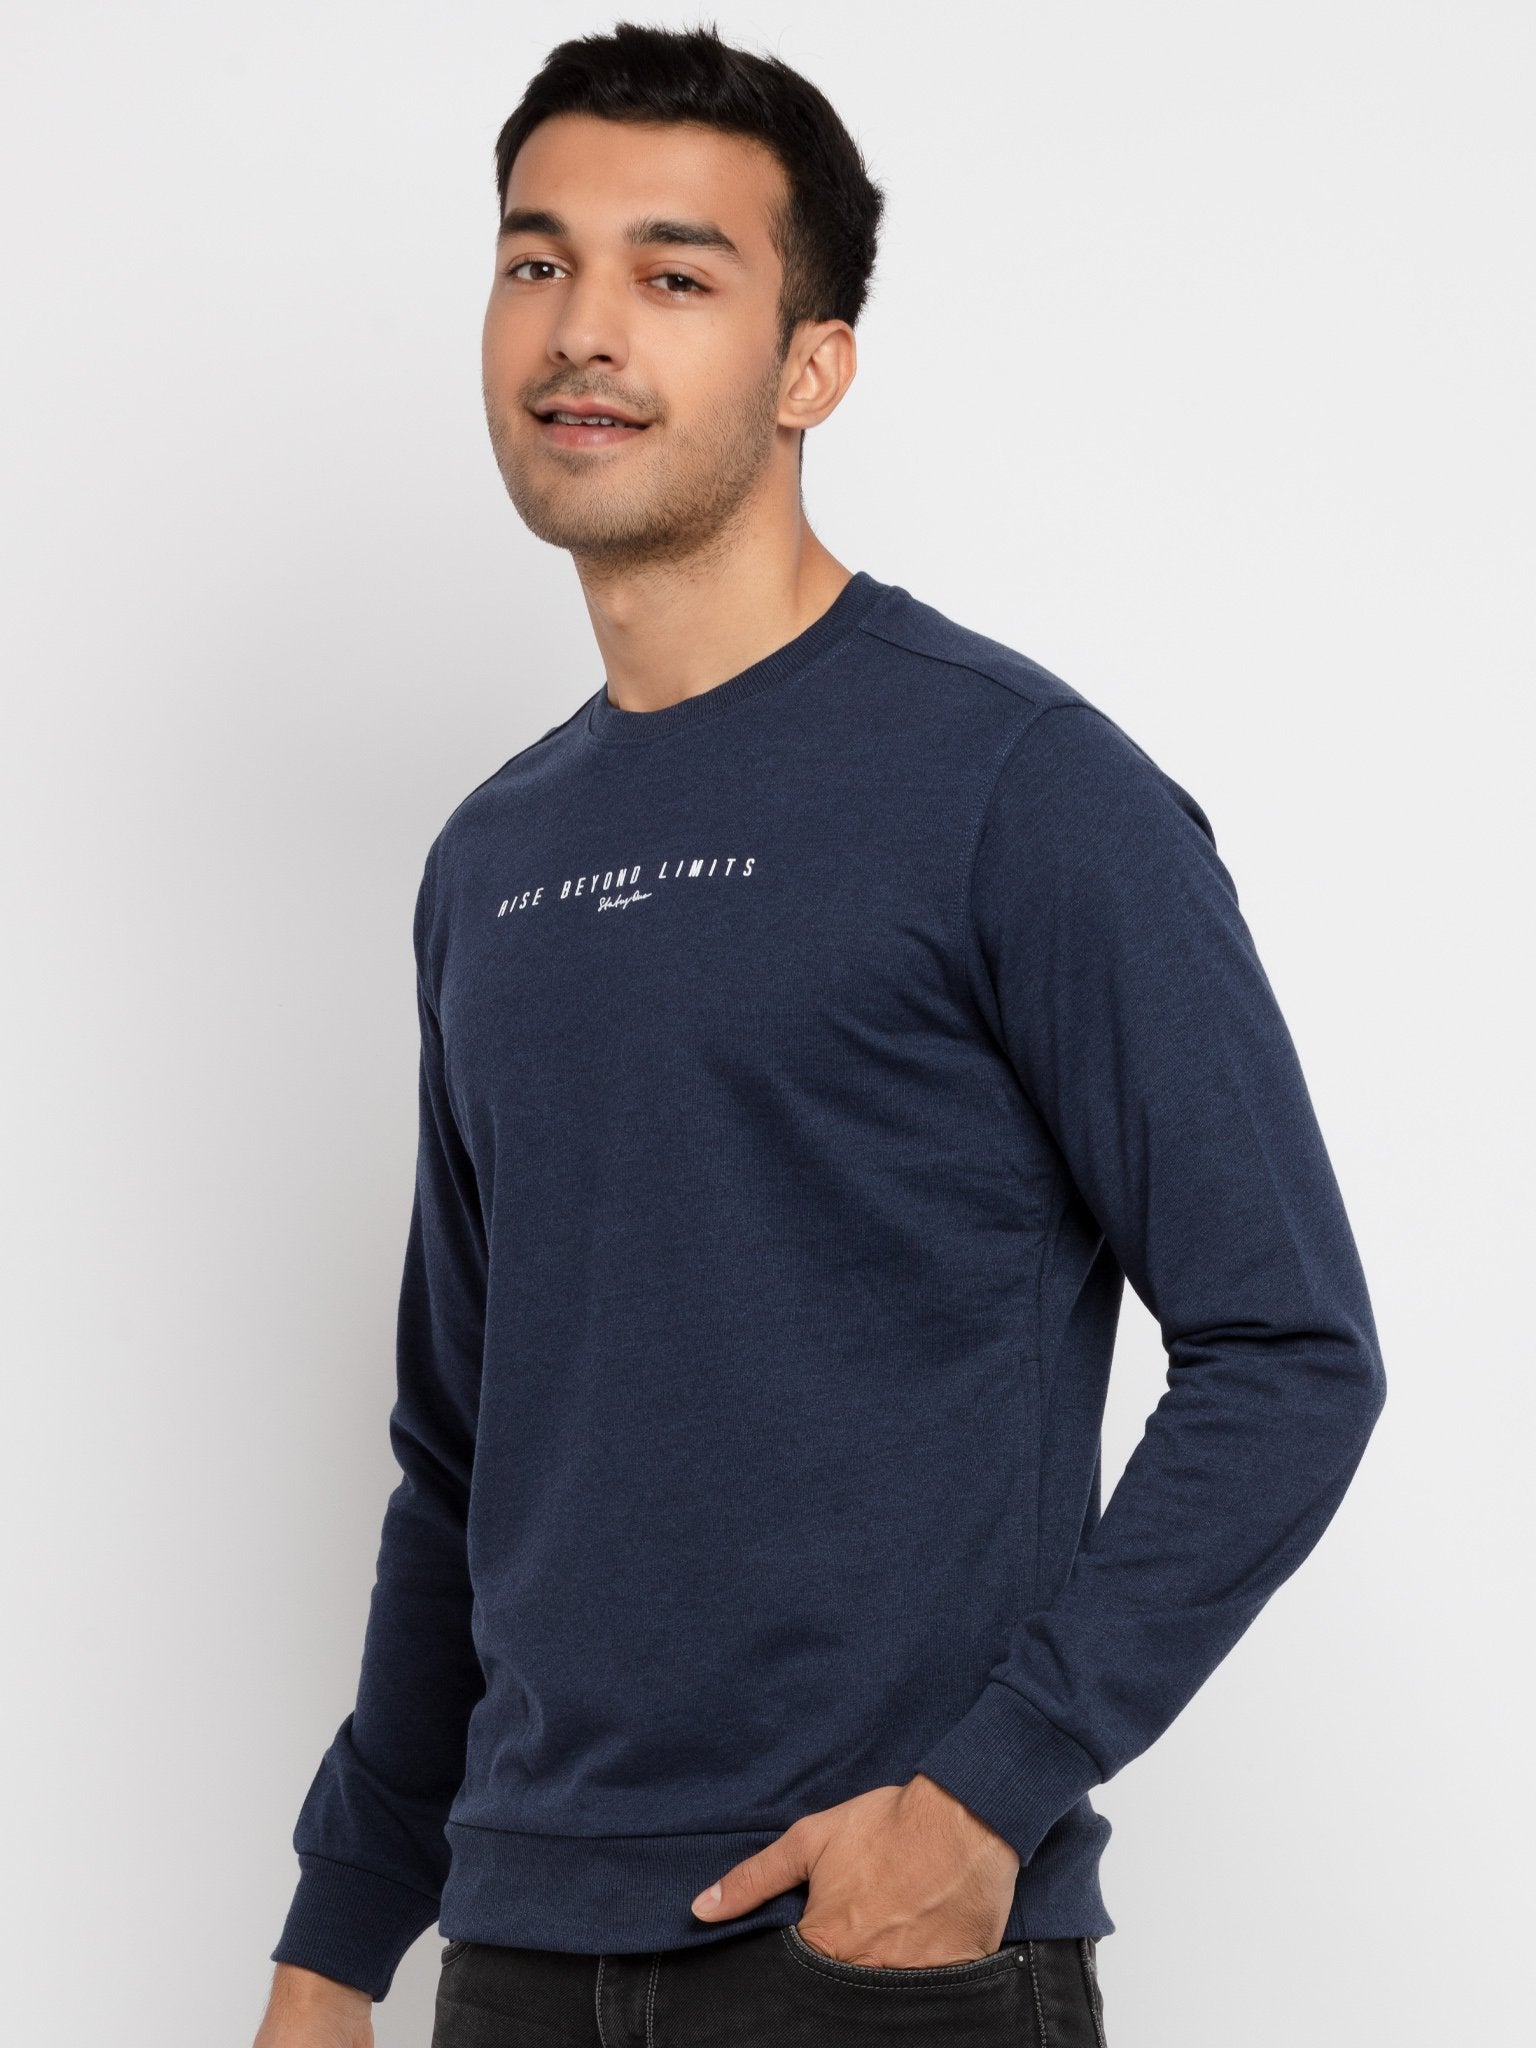 best sweatshirts for men